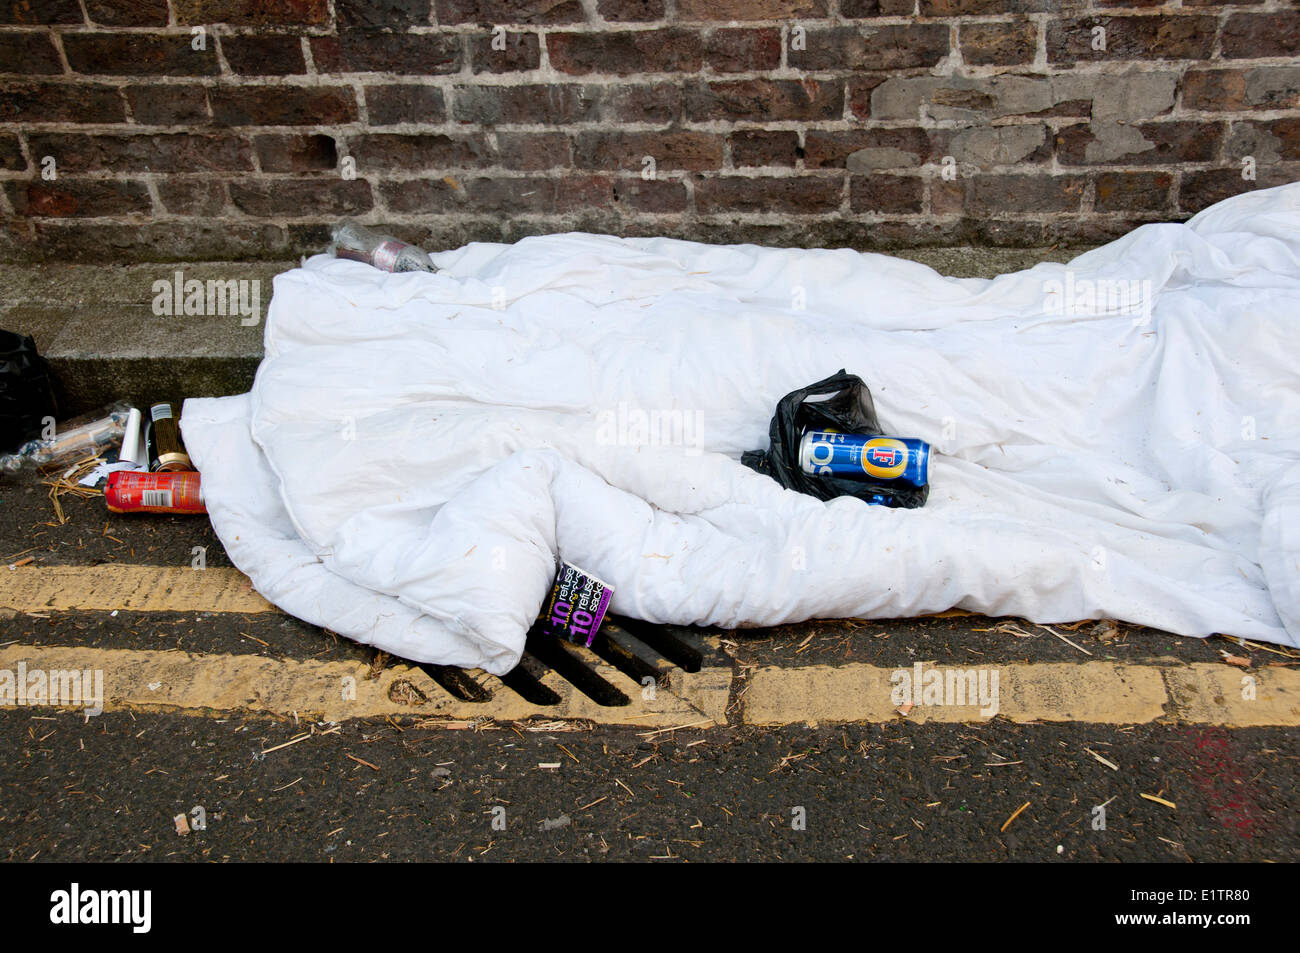 Buxton Street, près de Brick Lane, East London. 8 juin 2014. Dormir dans le caniveau. Couette abandonnés et des canettes de bière. Banque D'Images